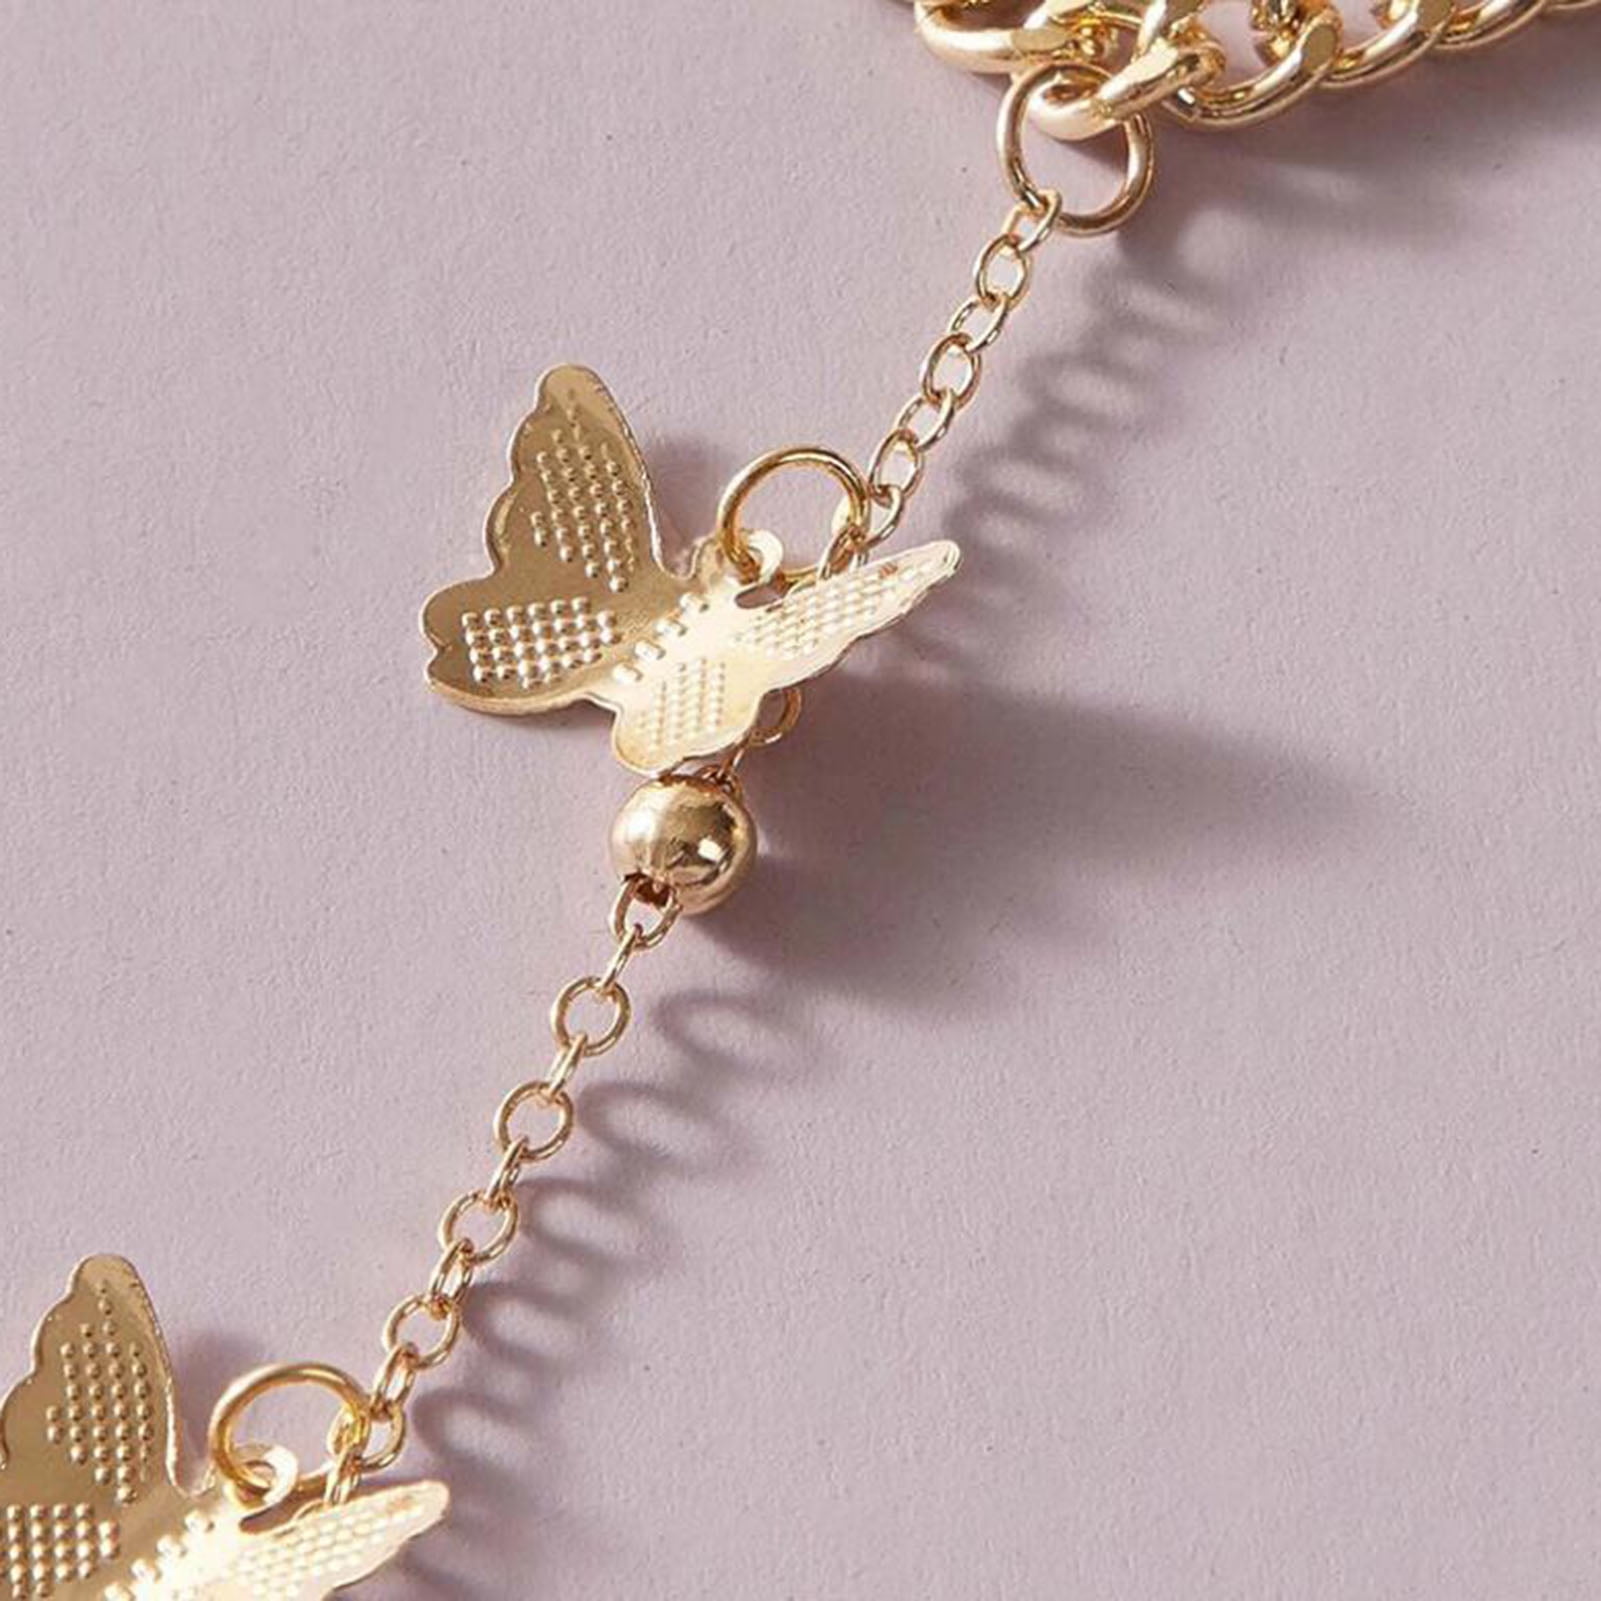 Kindness Butterfly Bracelet - Shop Ringmasters